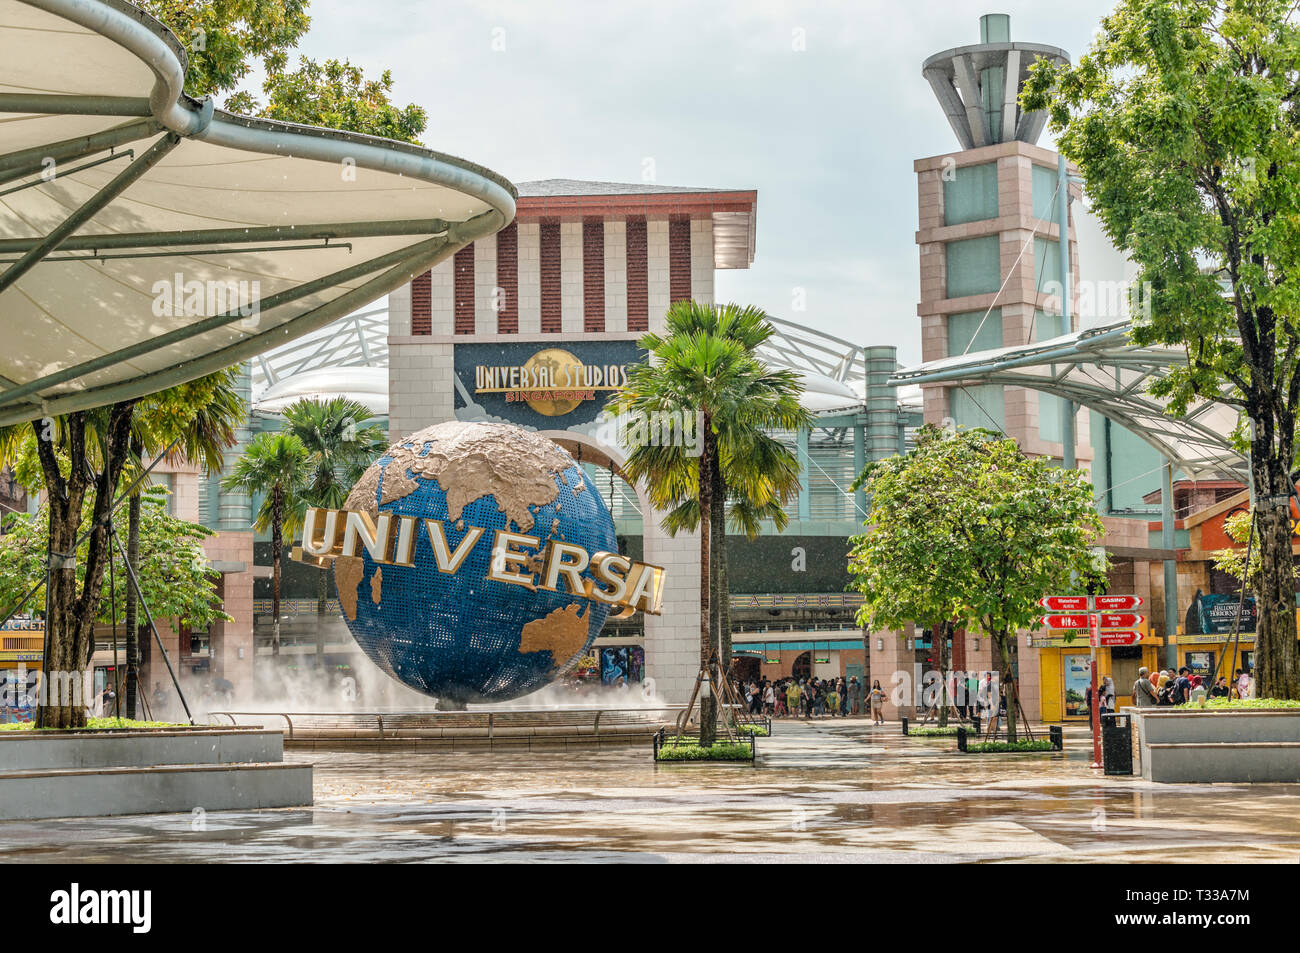 La folla si trova di fronte agli Universal Studios Singapore al Resorts World Sentosa sull'isola di Sentosa, Singapore Foto Stock